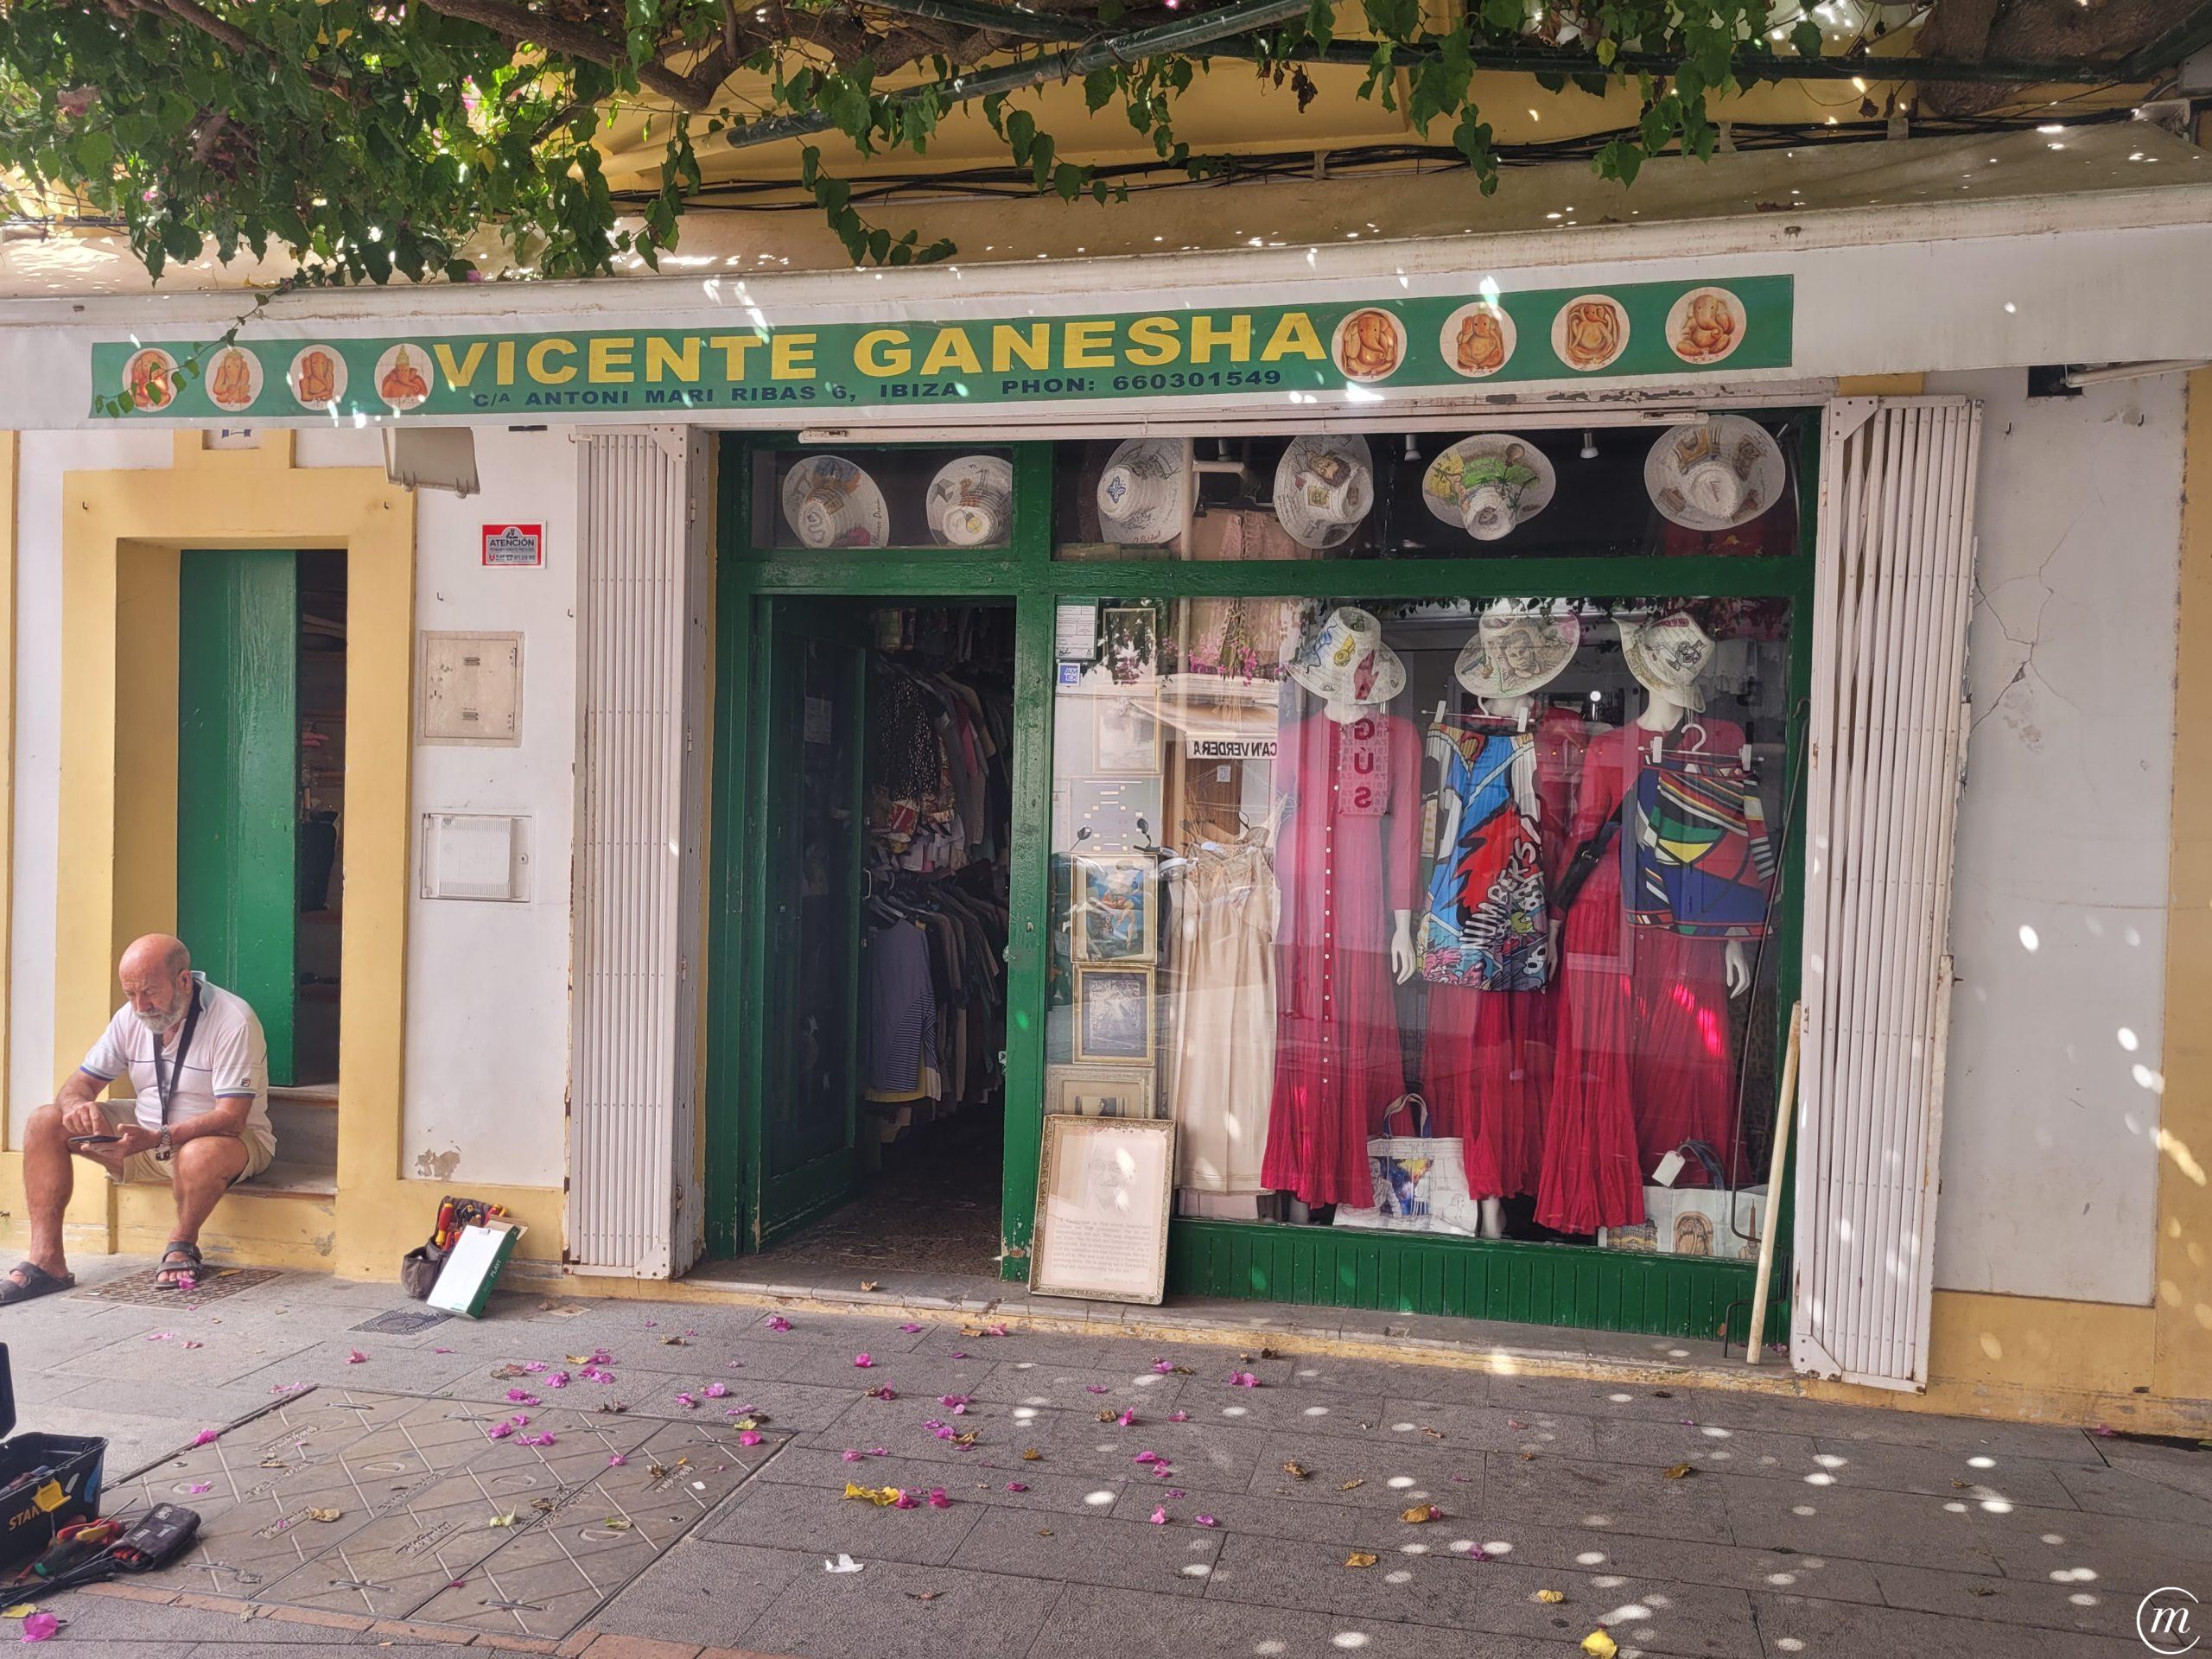 Tienda de Vicente Ganesha en Ibiza